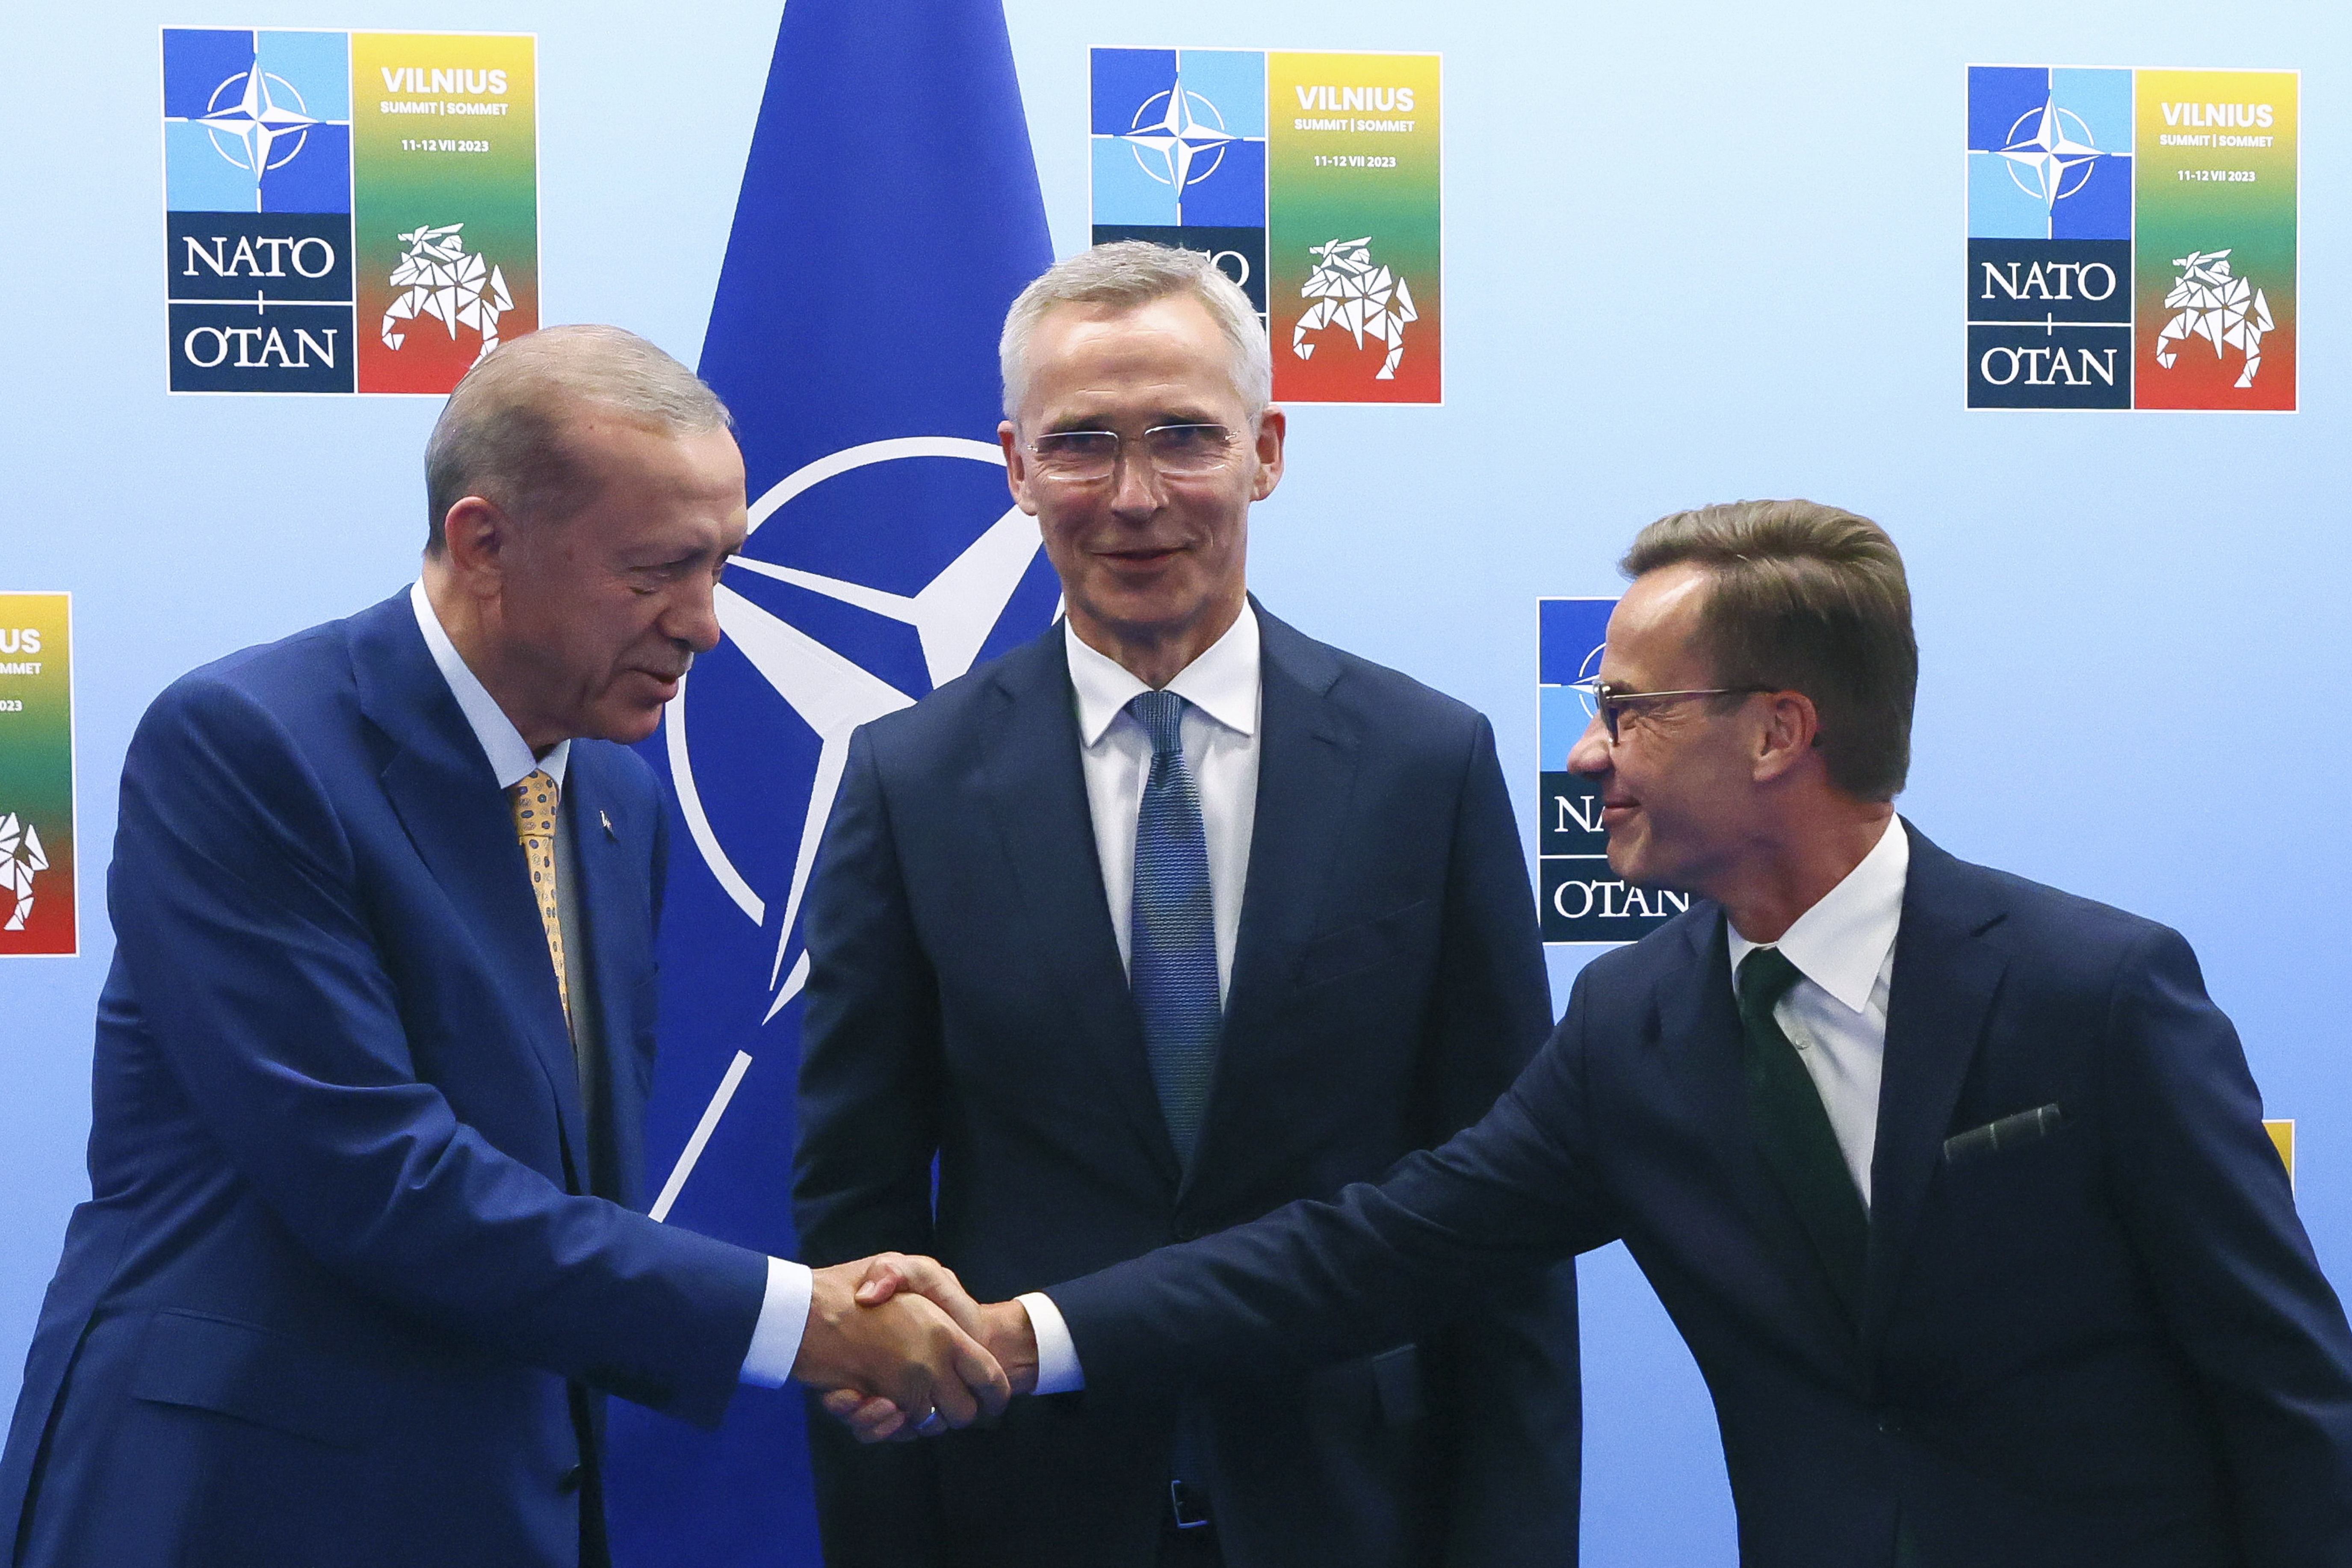 Der türkische Präsident Recep Tayyip Erdogan (links) schüttelt dem schwedischen Ministerpräsidenten Ulf Kristersson (rechts) die Hand, während NATO-Generalsekretär Jens Stoltenberg vor einem Treffen im Vorfeld eines NATO-Gipfels zusieht.